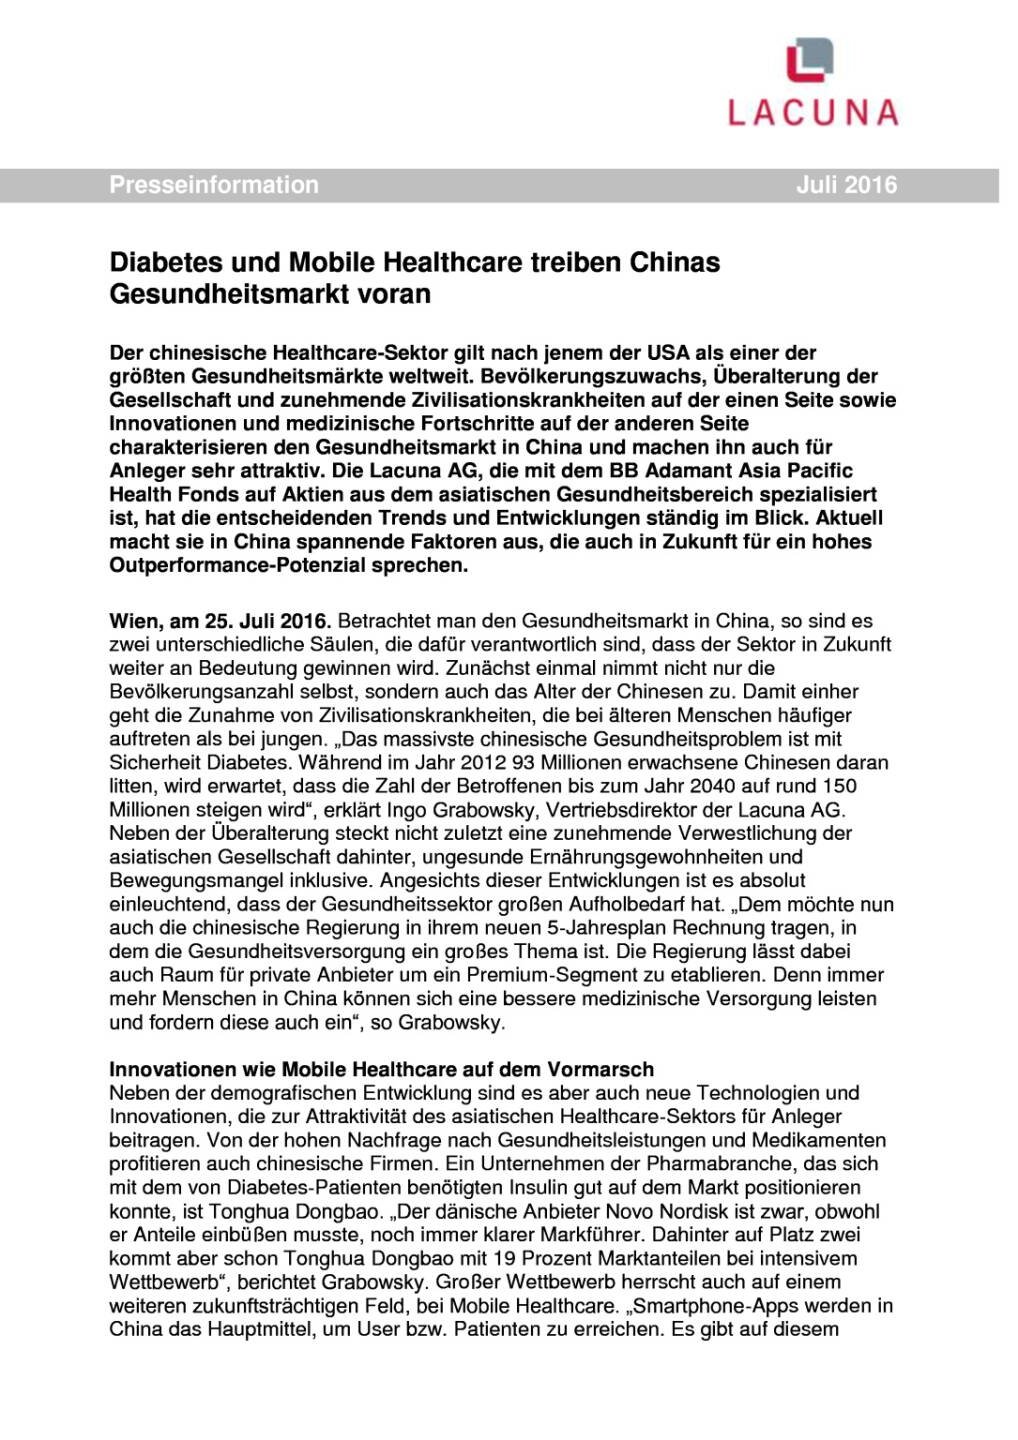 Lacuna: Diabetes und Mobile Healthcare treiben Chinas Gesundheitsmarkt voran, Seite 1/2, komplettes Dokument unter http://boerse-social.com/static/uploads/file_1480_lacuna_diabetes_und_mobile_healthcare_treiben_chinas_gesundheitsmarkt_voran.pdf